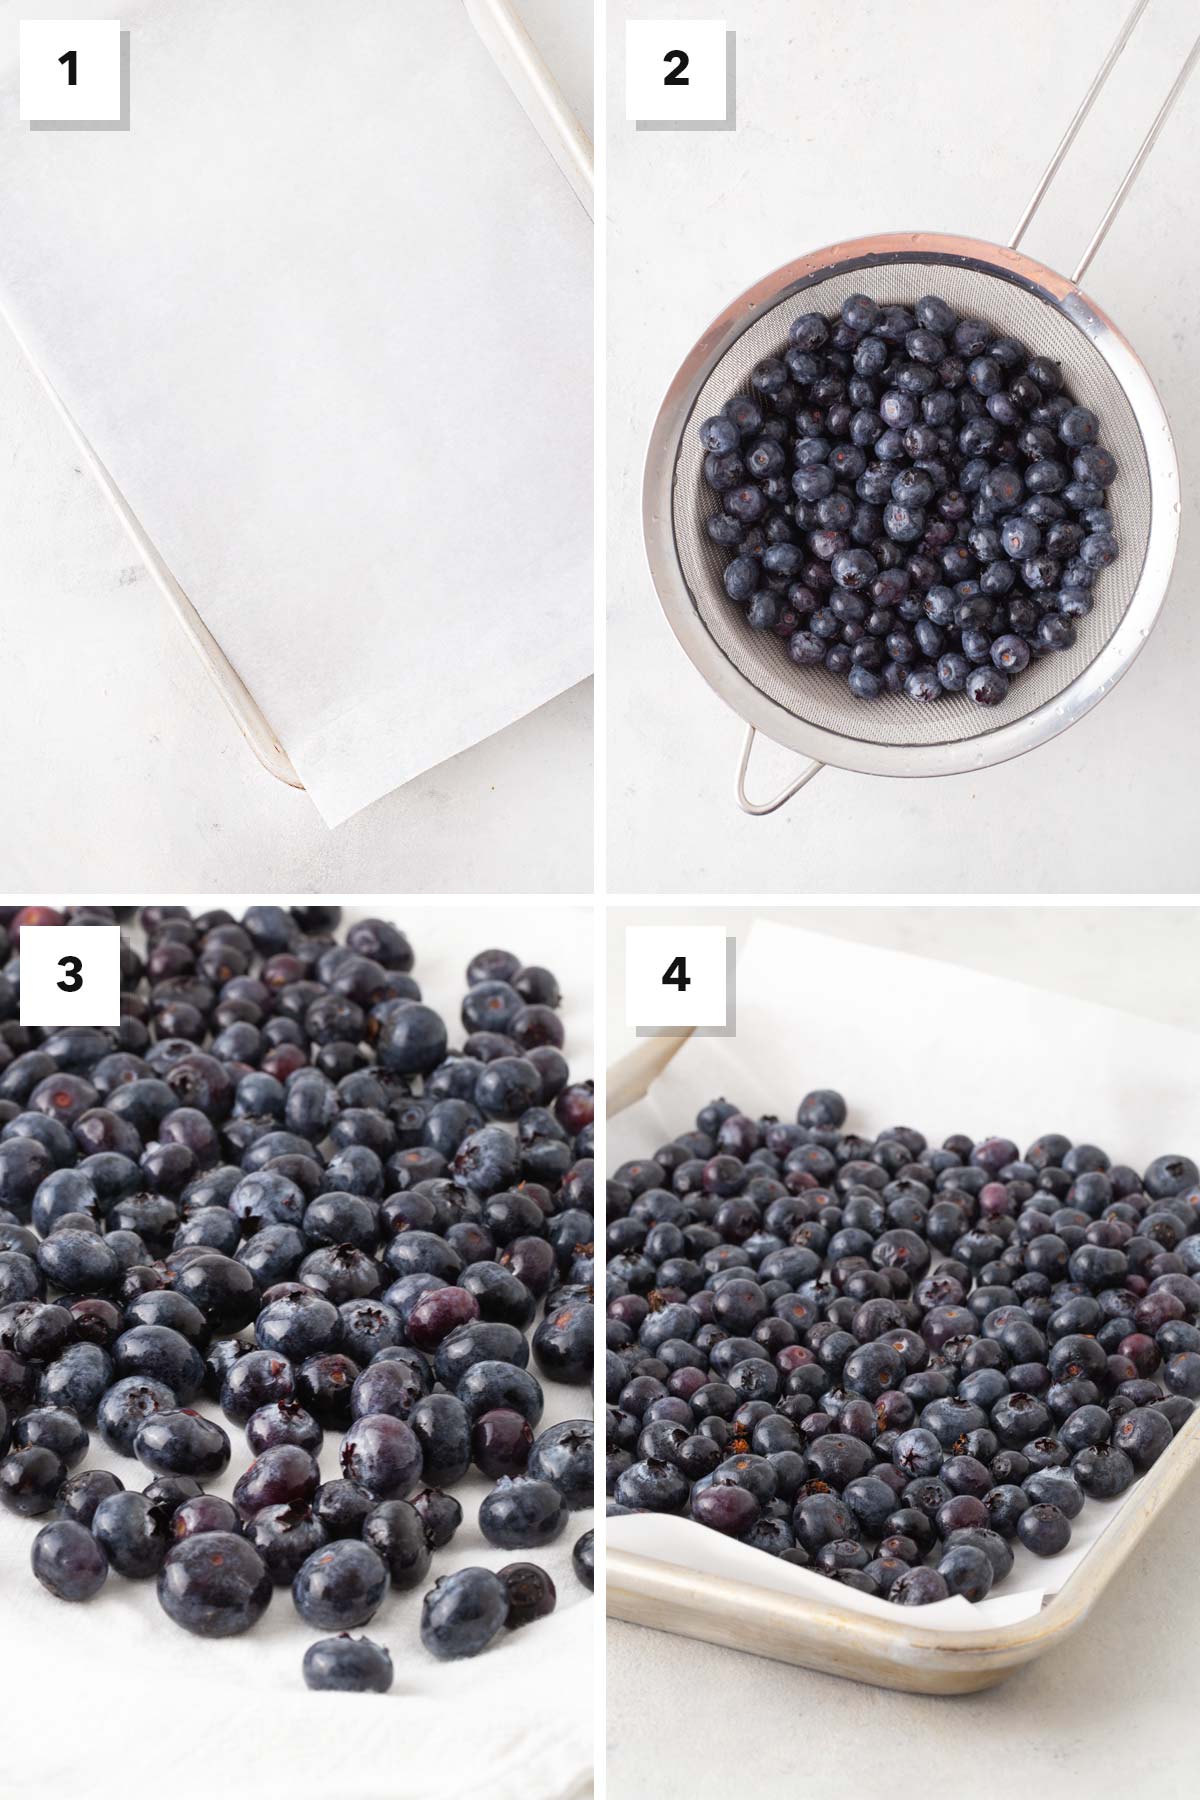 Steps for freezing blueberries.